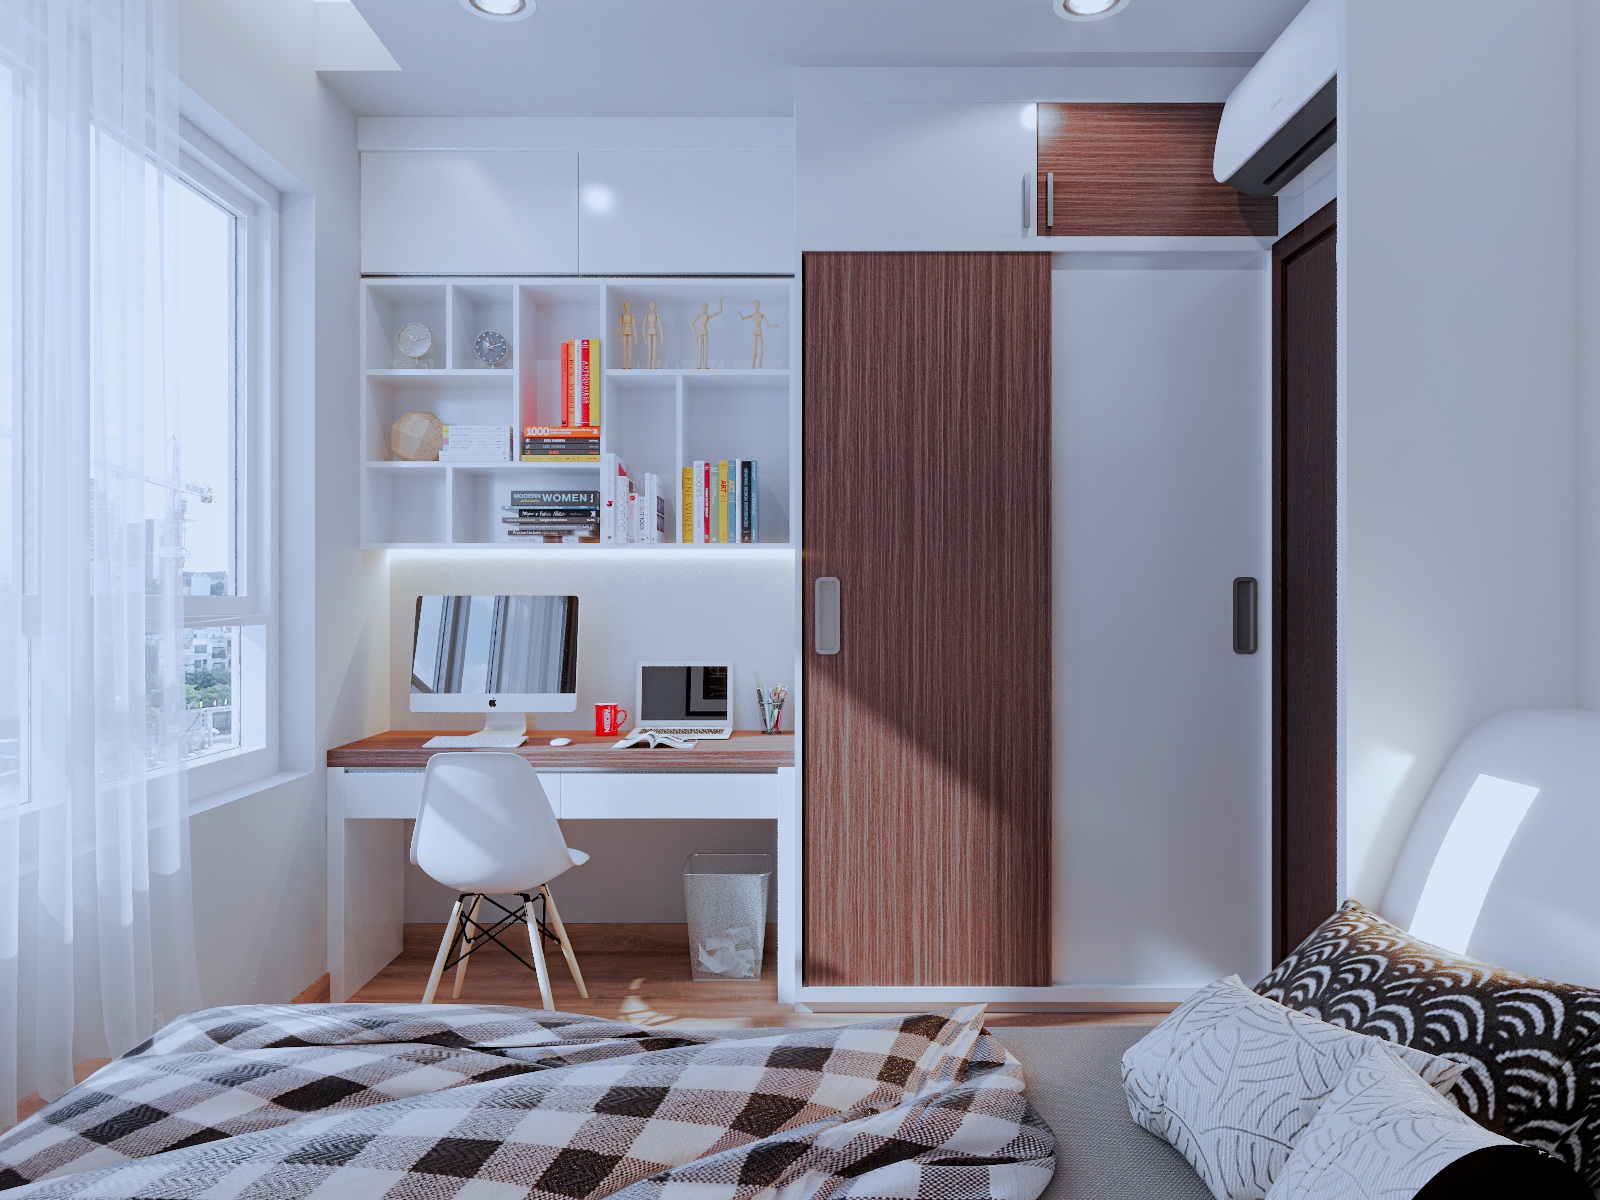 Bố trí nội thất là cách để biến không gian nhà trở nên ấm cúng và thư giãn hơn. Đừng bỏ qua cơ hội để chiêm ngưỡng các mẫu bố trí nội thất mới nhất và cập nhật xu hướng tại hình ảnh liên quan.